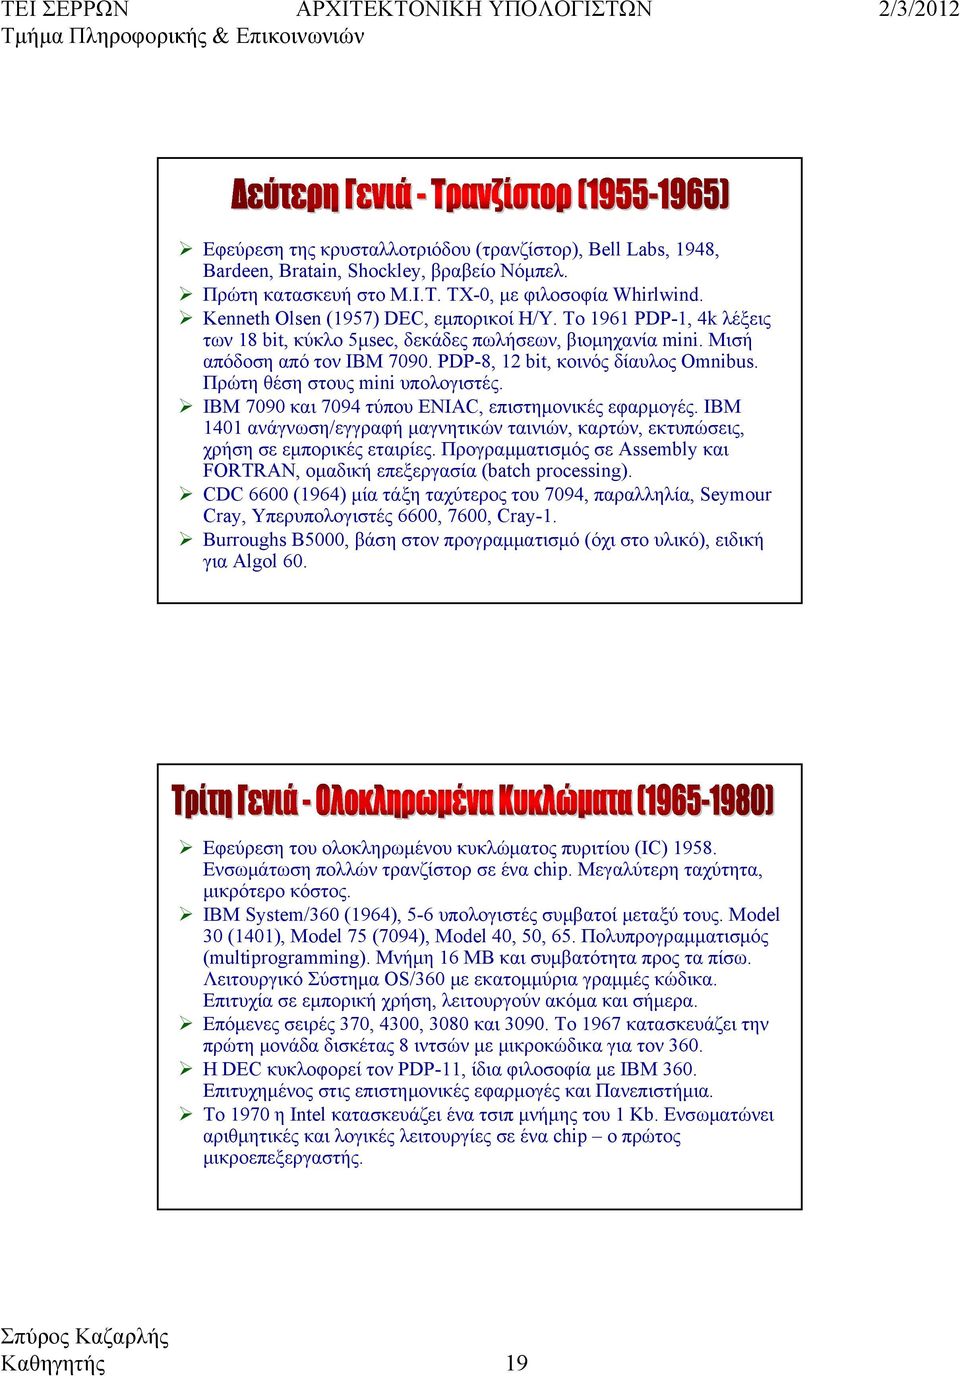 ΙΒΜ 7090 και 7094 τύπου ENIAC, επιστημονικές εφαρμογές. IBM 40 ανάγνωση/εγγραφή μαγνητικών ταινιών, καρτών, εκτυπώσεις, χρήση σε εμπορικές εταιρίες.